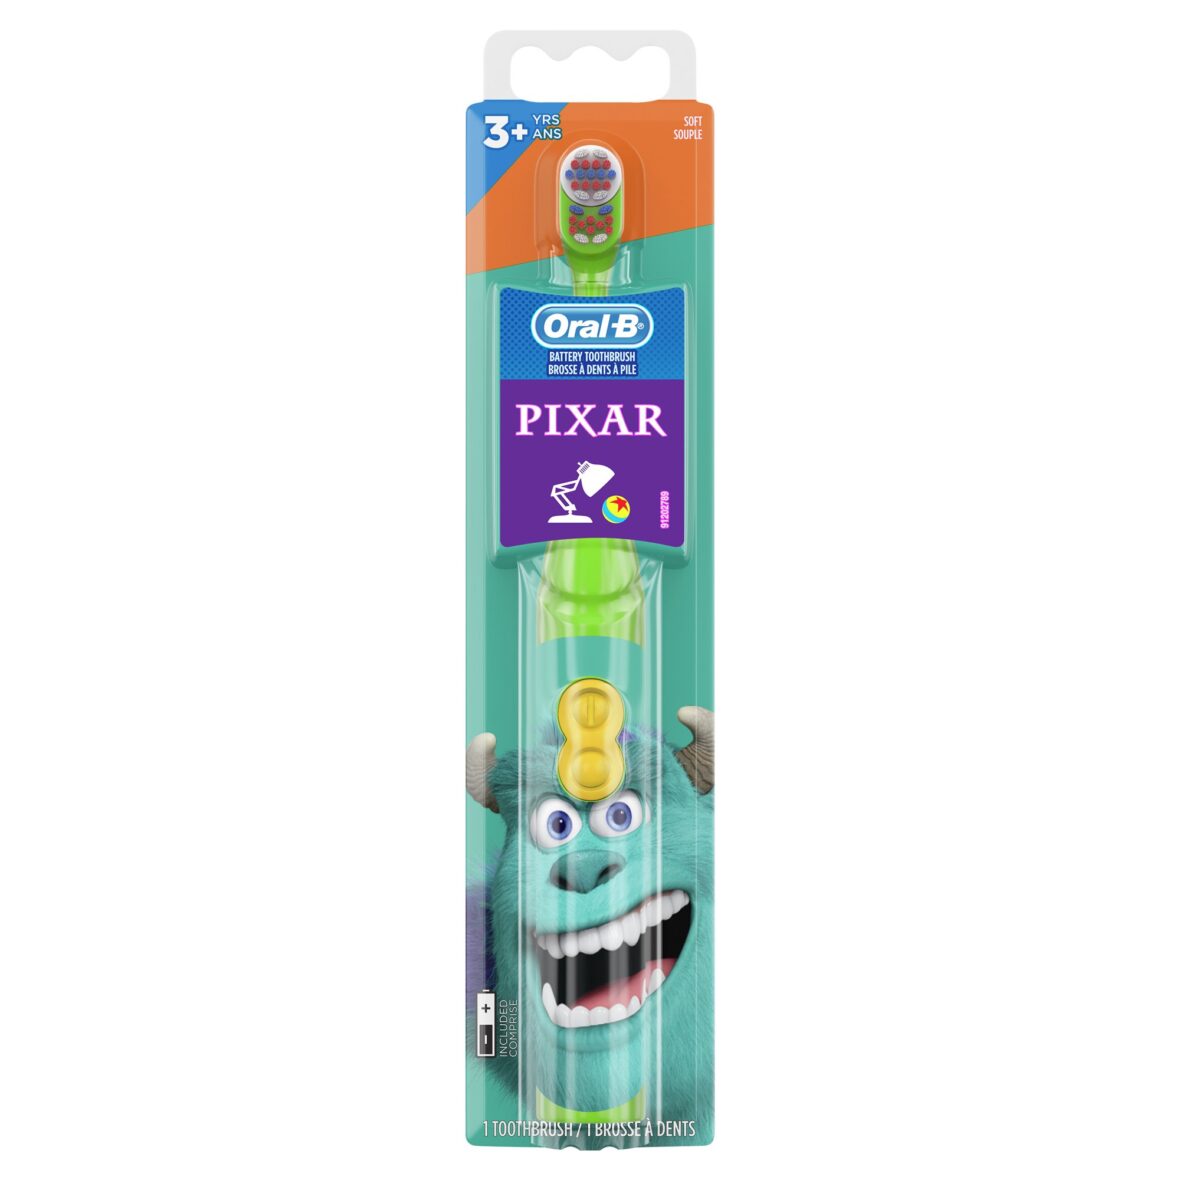 Электрическая детская зубная щетка Oral-B, с любимцами PIXAR, Мягкая щетина, для детей 3+